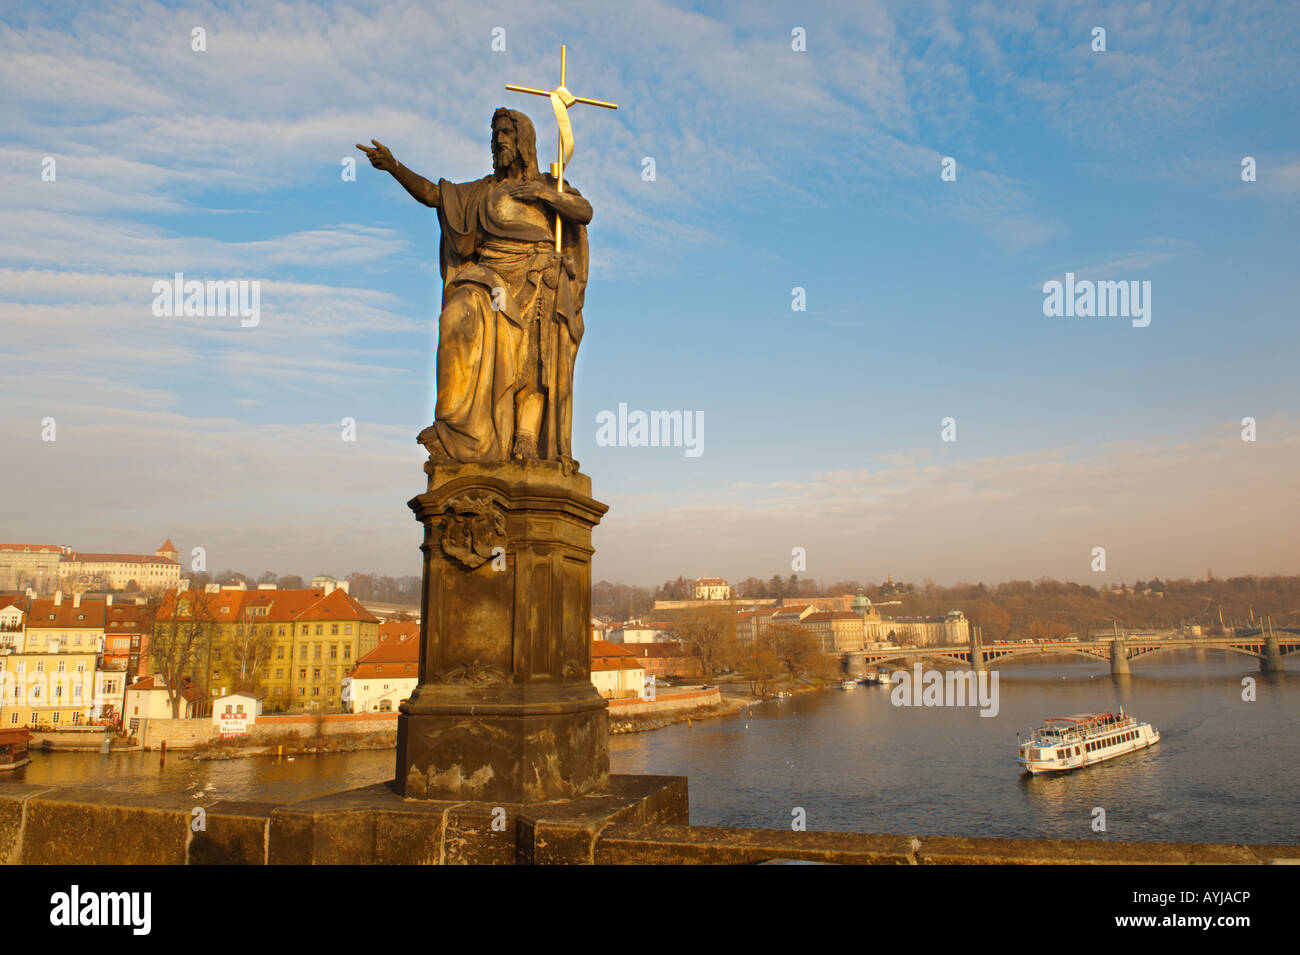 Statue auf der Karlsbrücke mit Wasserbus - Prag - Tschechische Republik Stockfoto